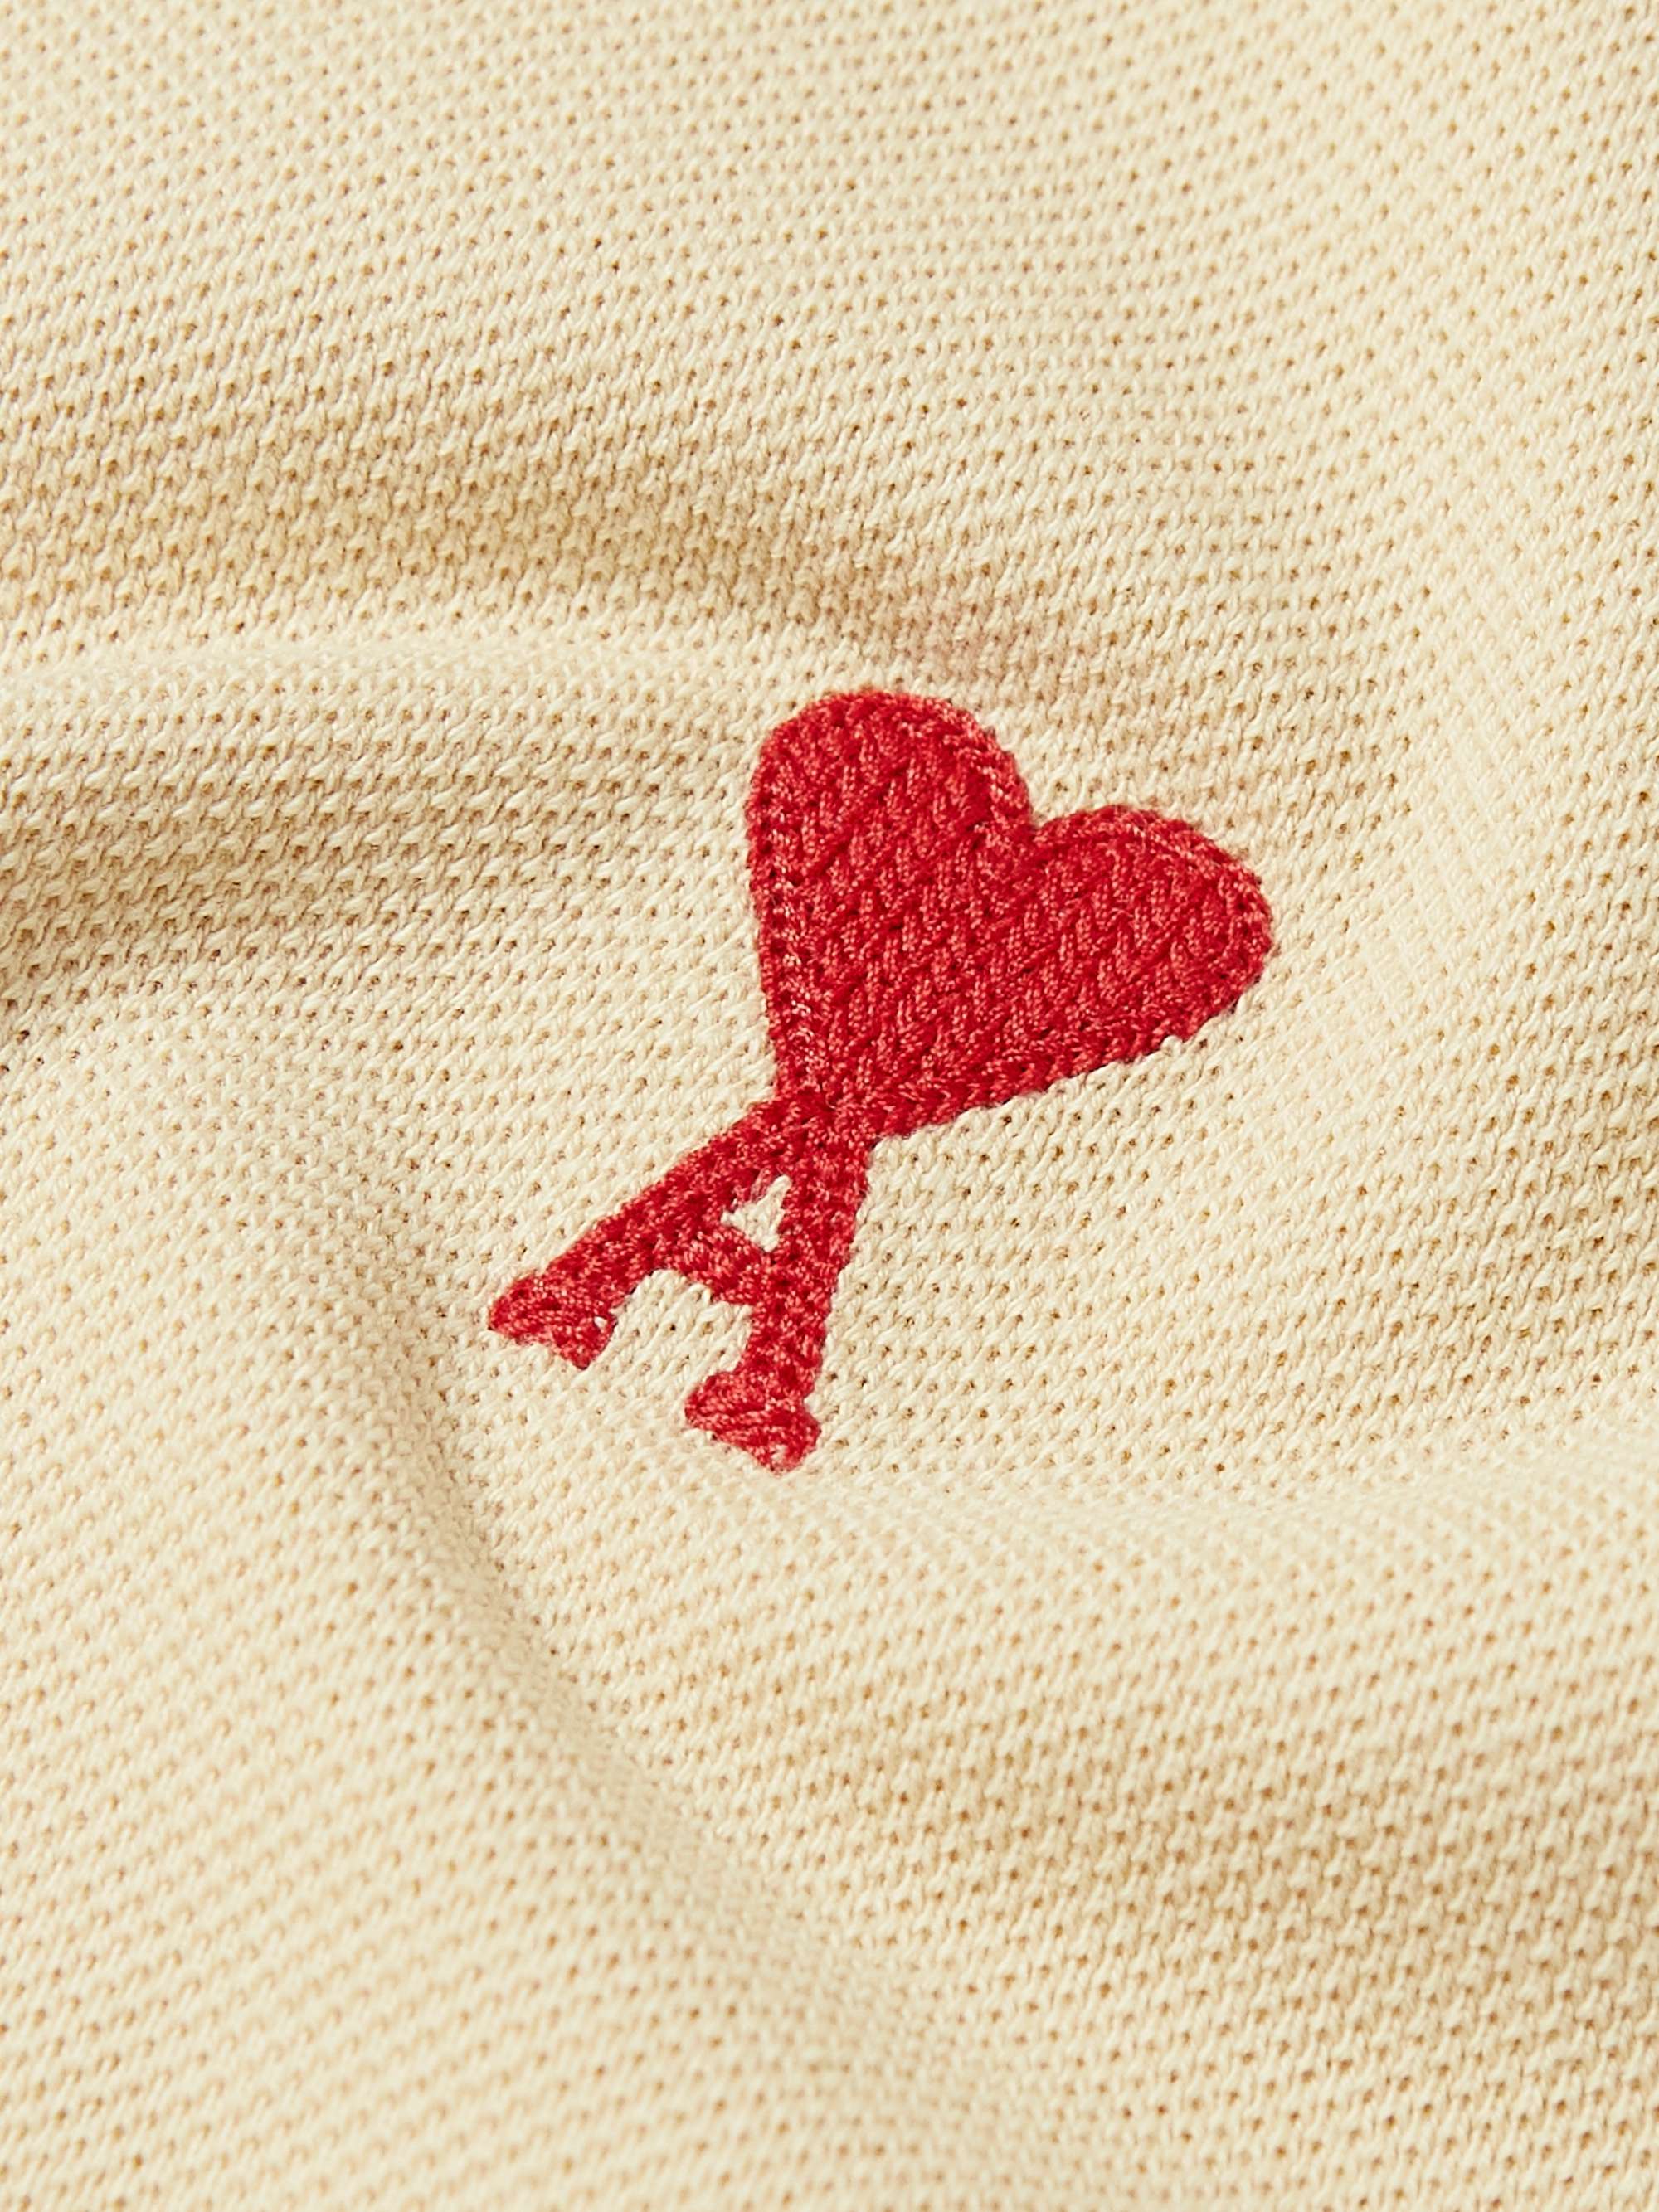 AMI PARIS Logo-Embroidered Cotton-Piqué Polo Shirt